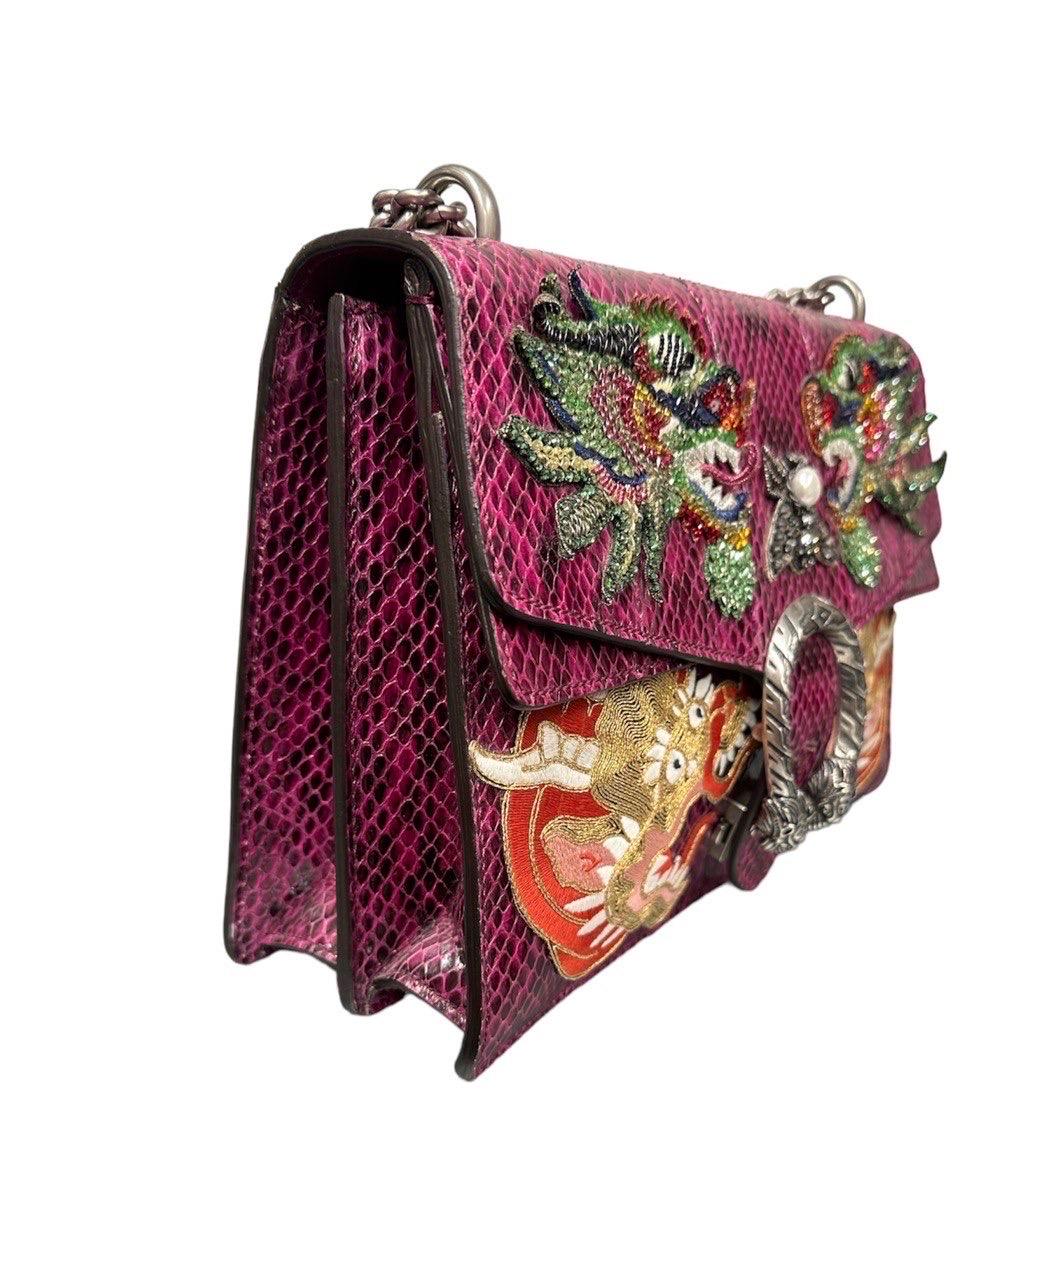 Women's Gucci Dionysus Top Shoulder Bag Violet Leather Tiger Swarovski